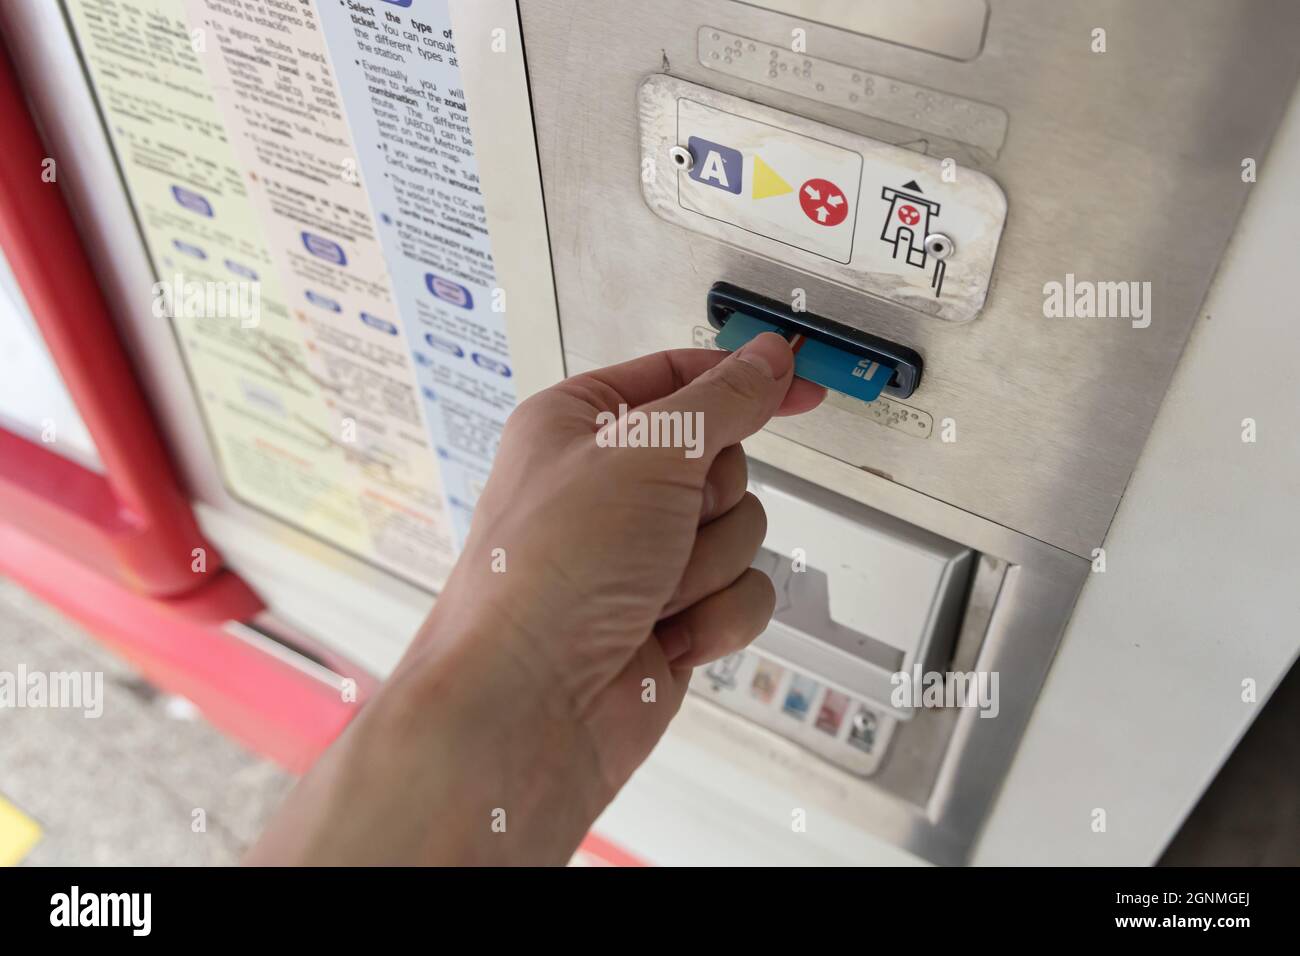 VALENCE, ESPAGNE - 25 SEPTEMBRE 2021 : main masculine utilisant une carte à puce à la station de métro Banque D'Images